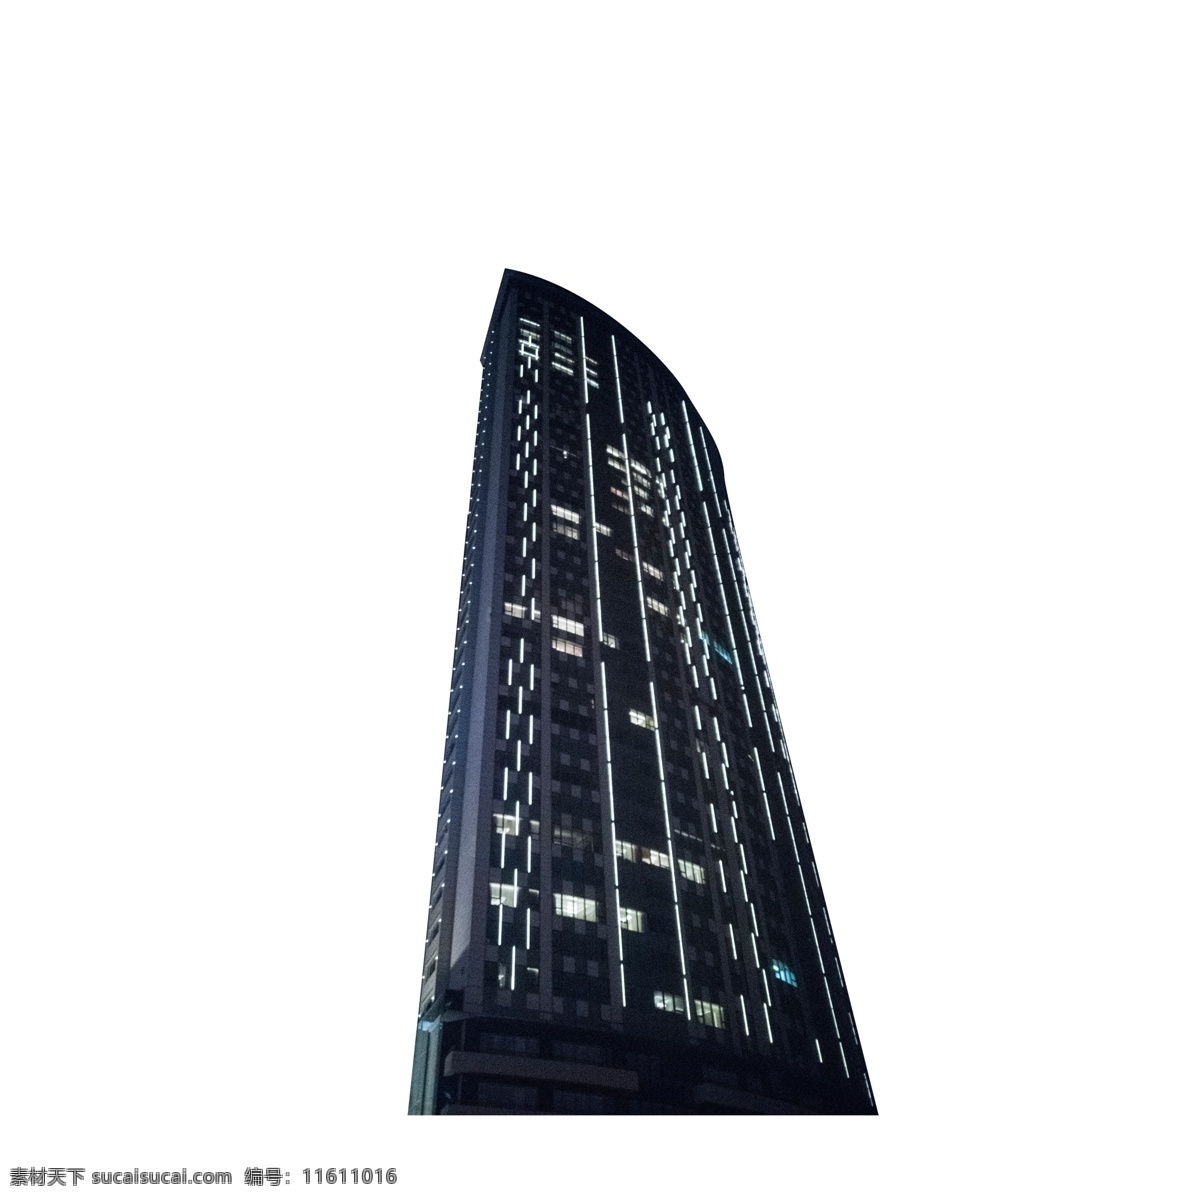 黑色 立体 建筑 大厦 元素 纹理 光泽 质感 电梯 攀登 上升 灯光 亮光 加班 科技 写字楼